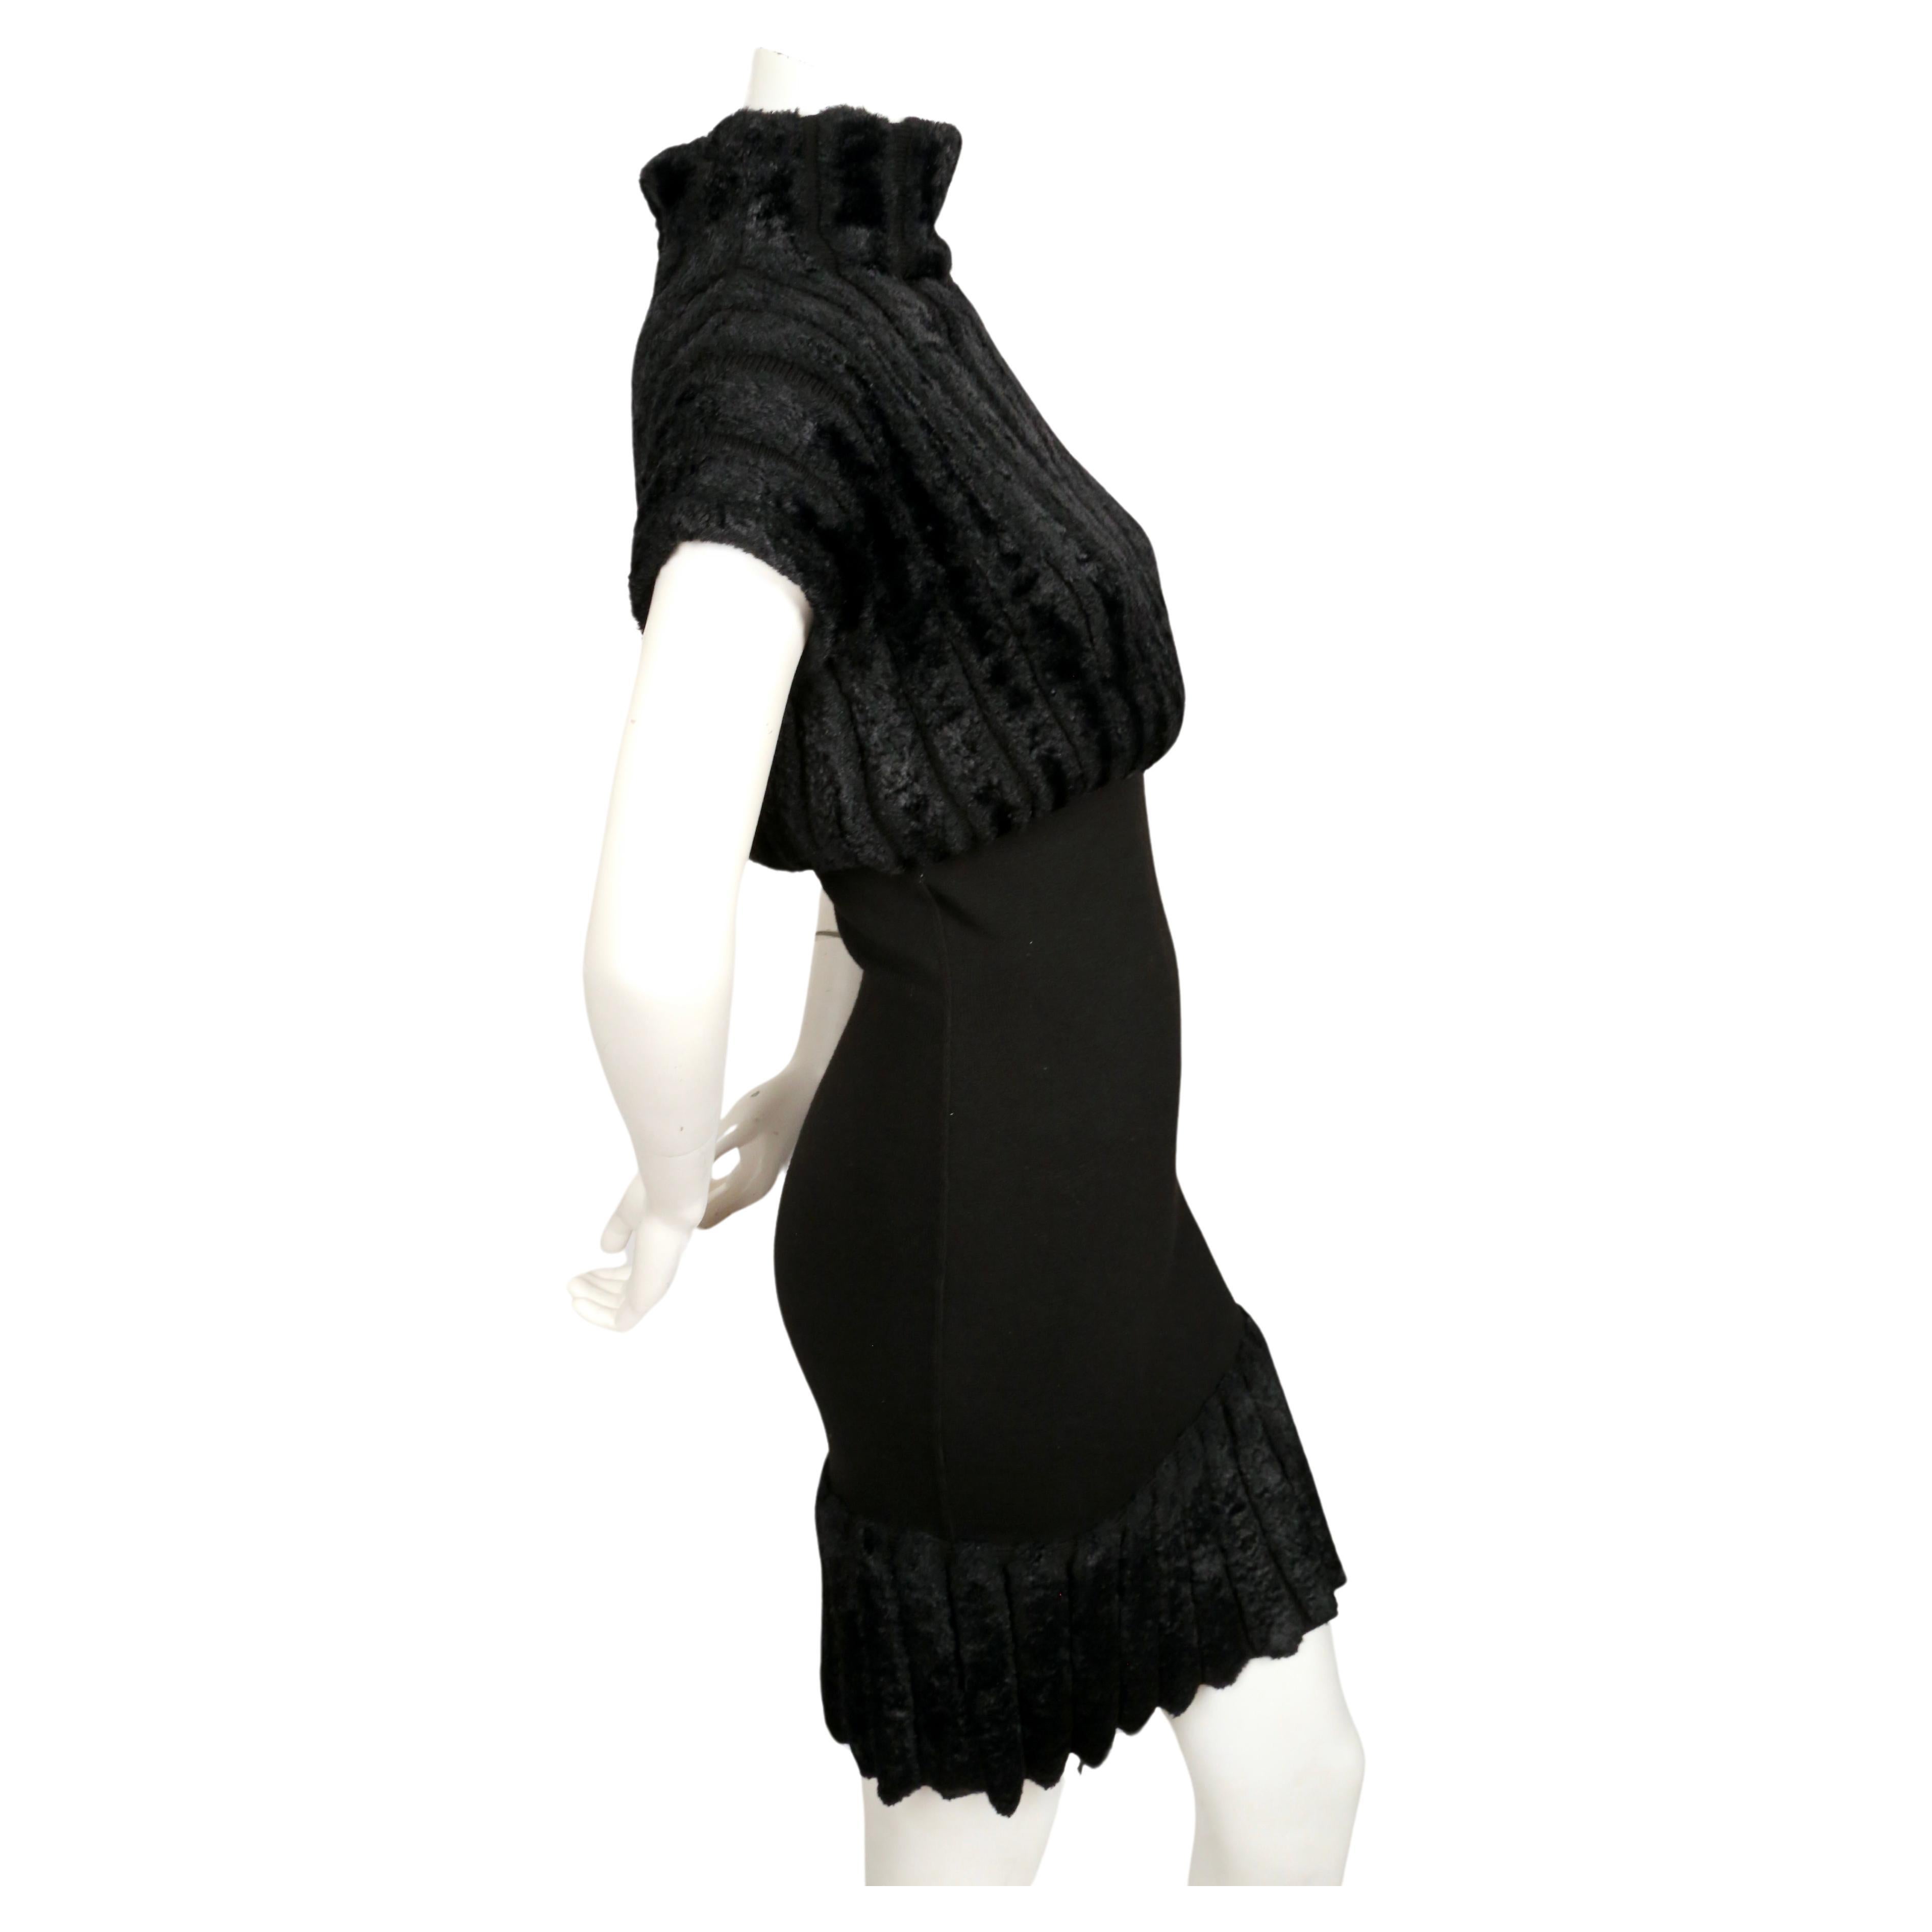 Très rare robe en chenille nervurée noir de jais d'Azzedine Alaia datant de 1991. Labellisée taille S. Mesures approximatives (non étiré) : buste 32